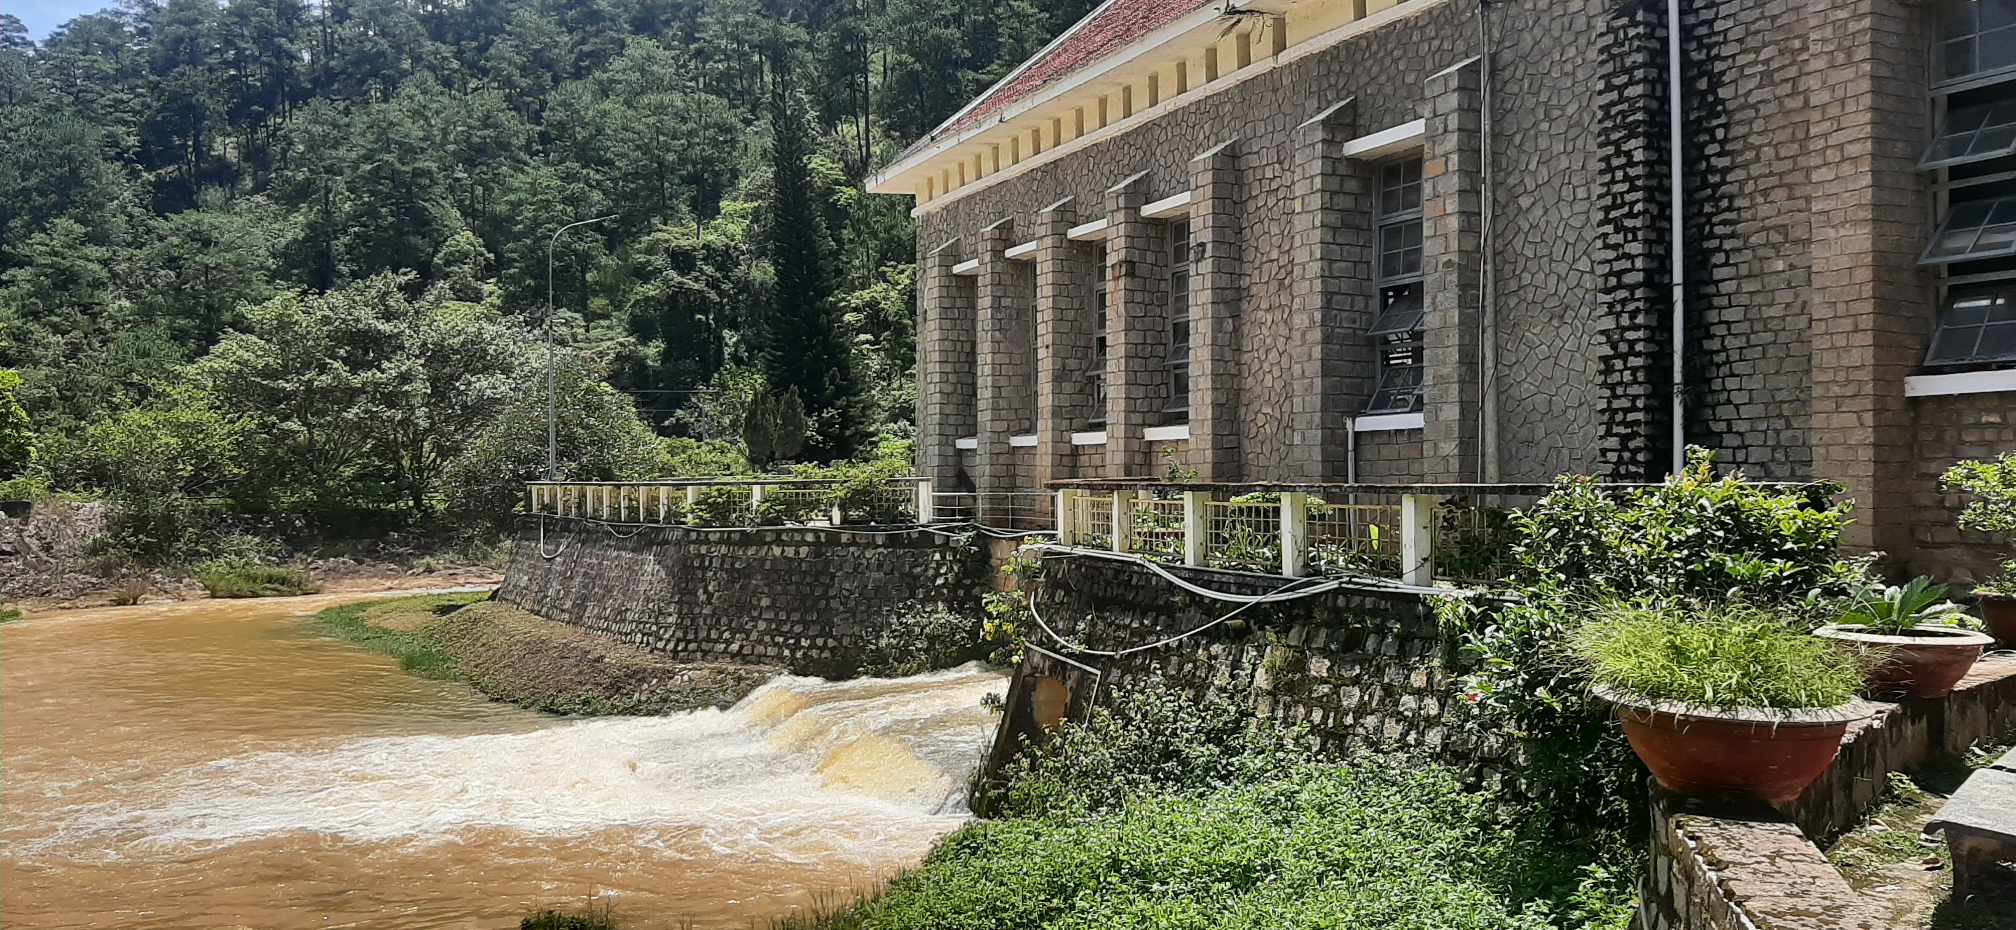 Ankroet - Thủy điện cổ nhất Việt Nam mang kiến trúc độc đáo, thu hút du khách - 2